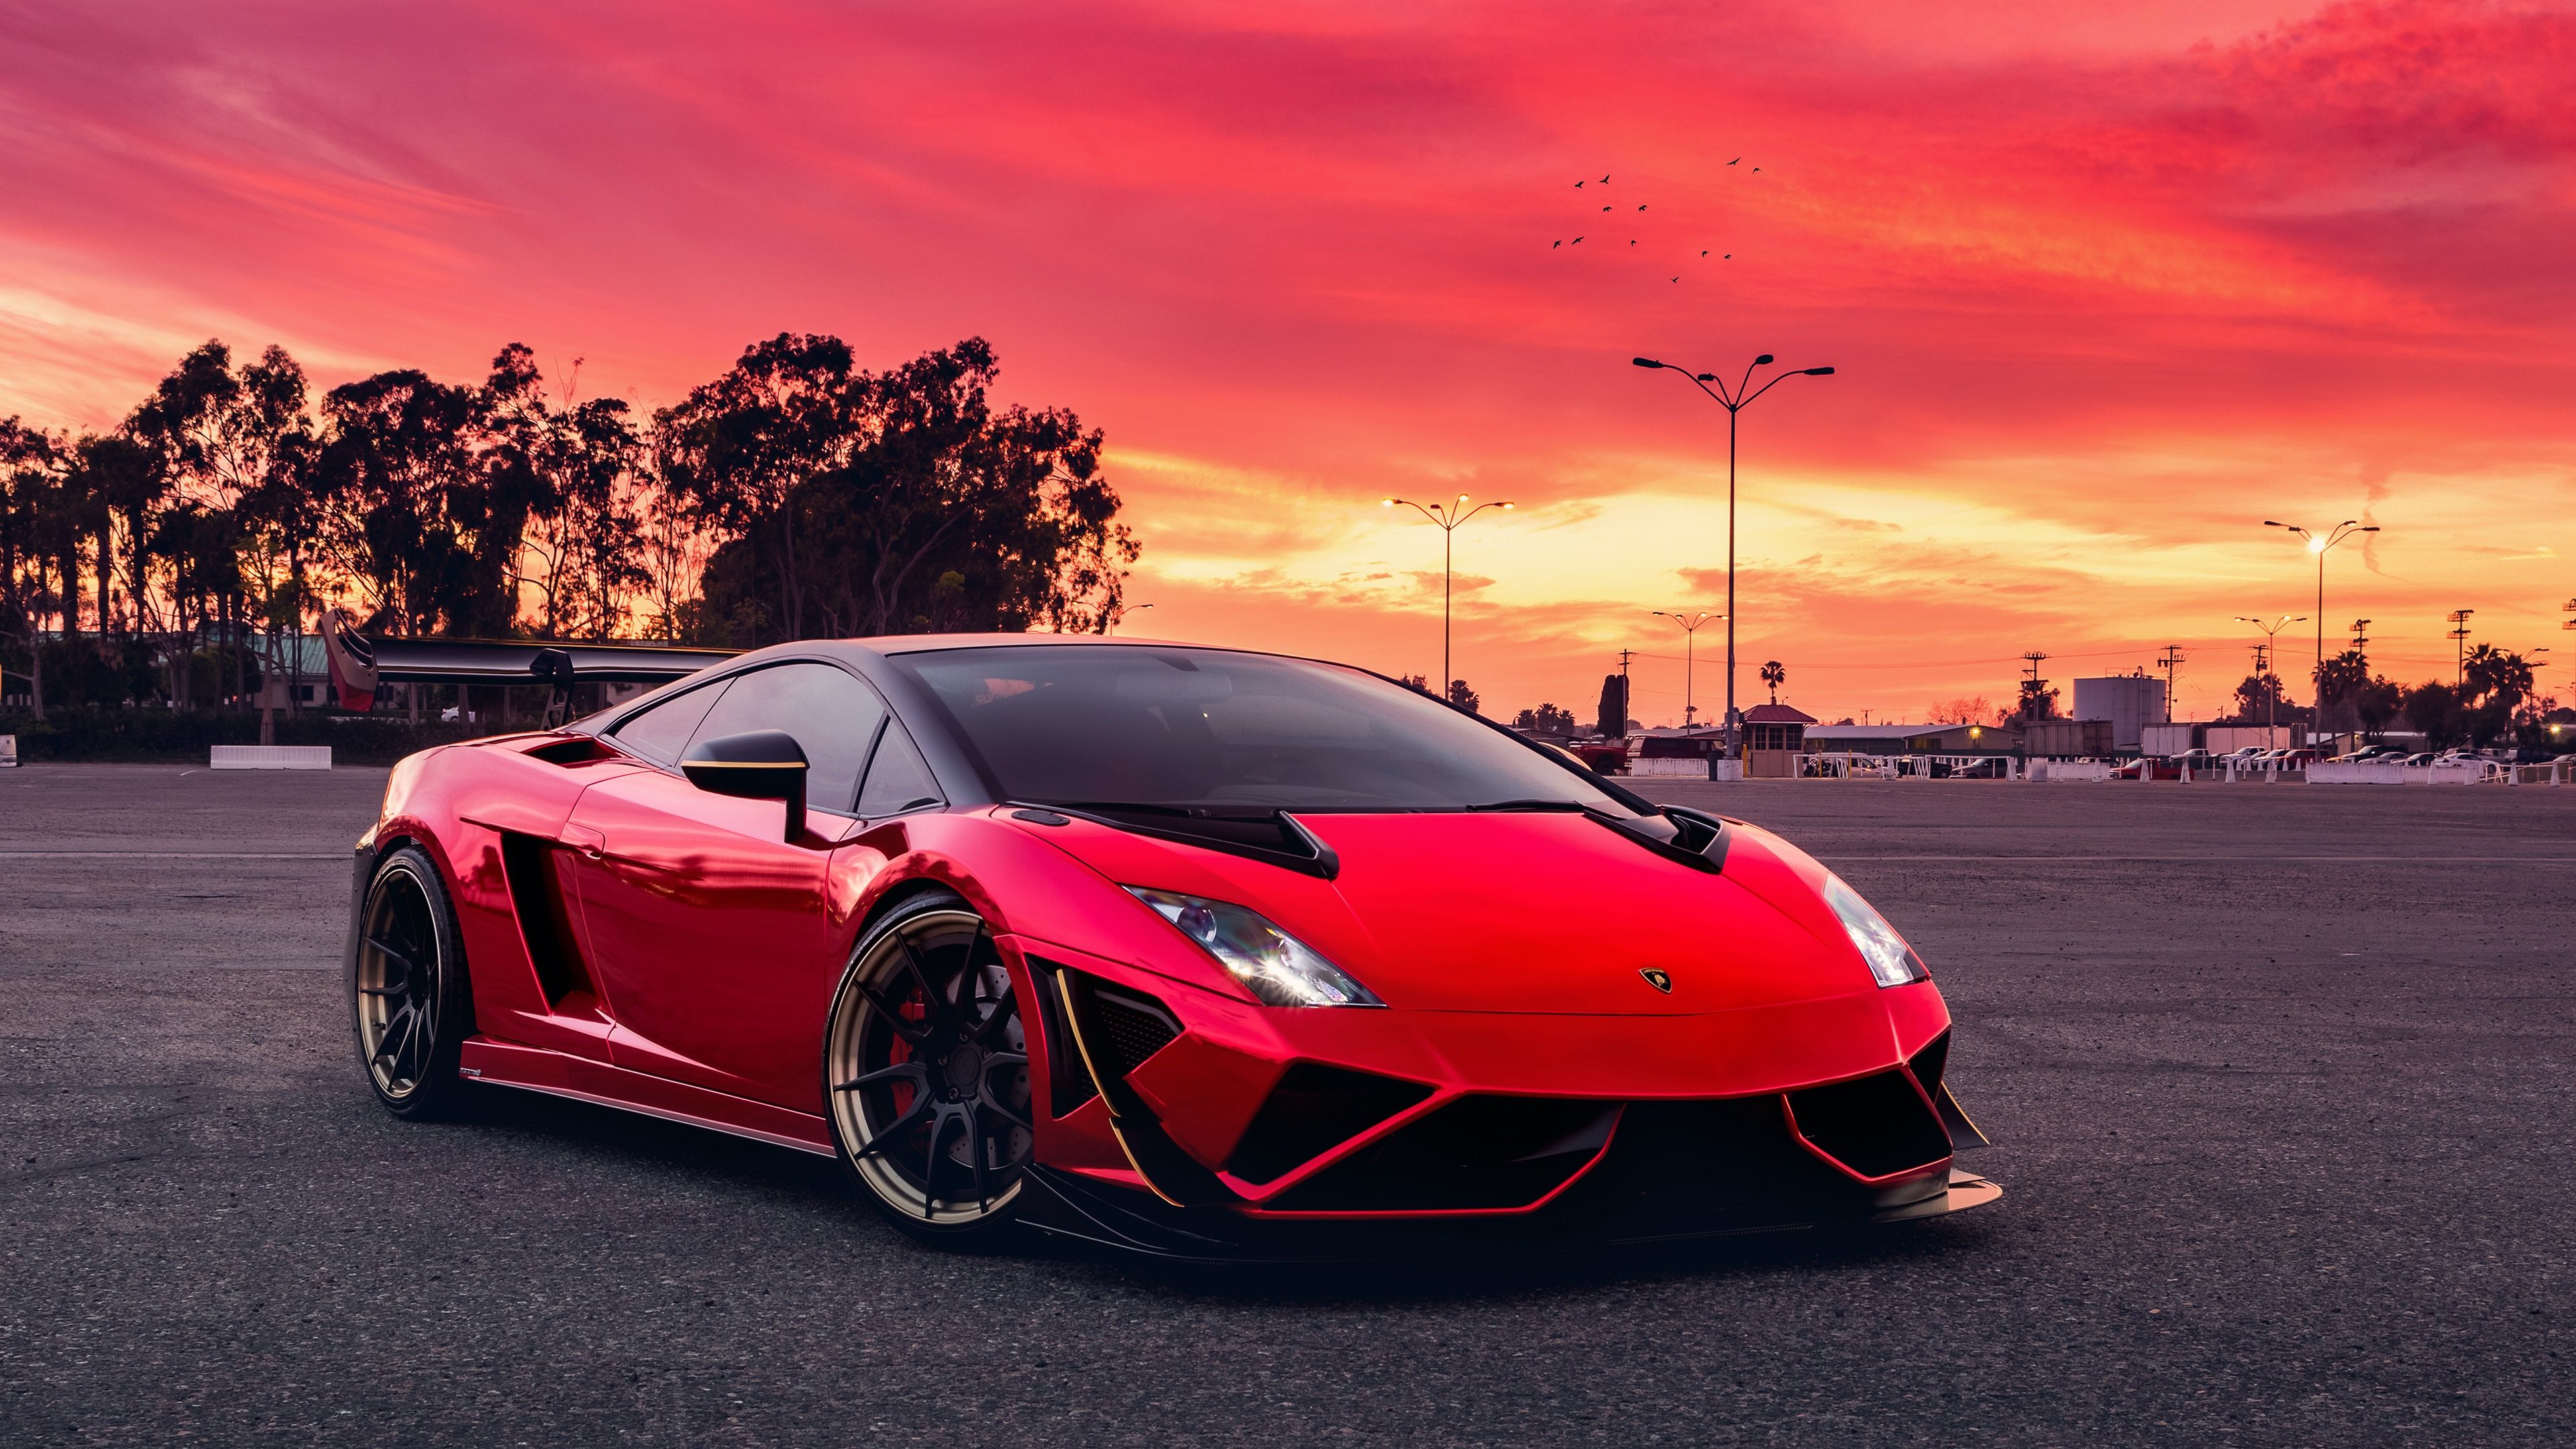 Red Lamborghini Gallardo, HD Cars, fondos de pantalla 4k, imágenes